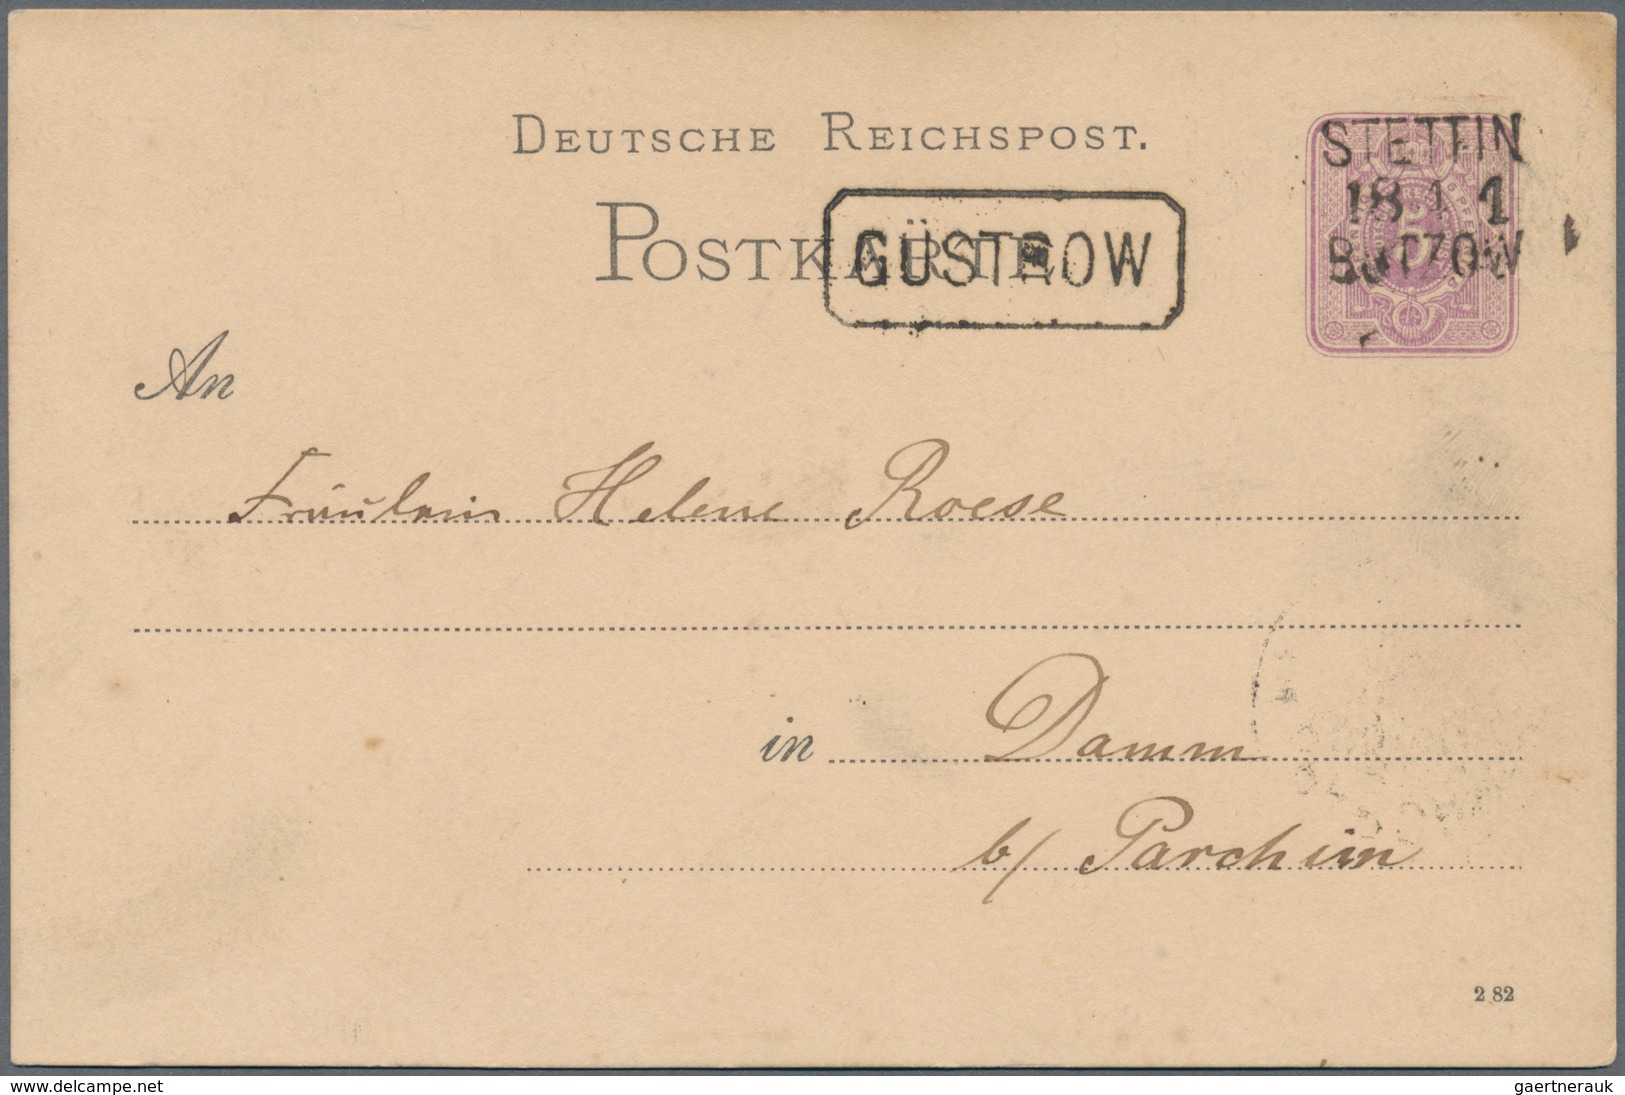 Deutschland: 1850 ab ca., uriger Posten mit ca.470 Belegen, dabei Material ab Altdeutschland, Dt.Rei